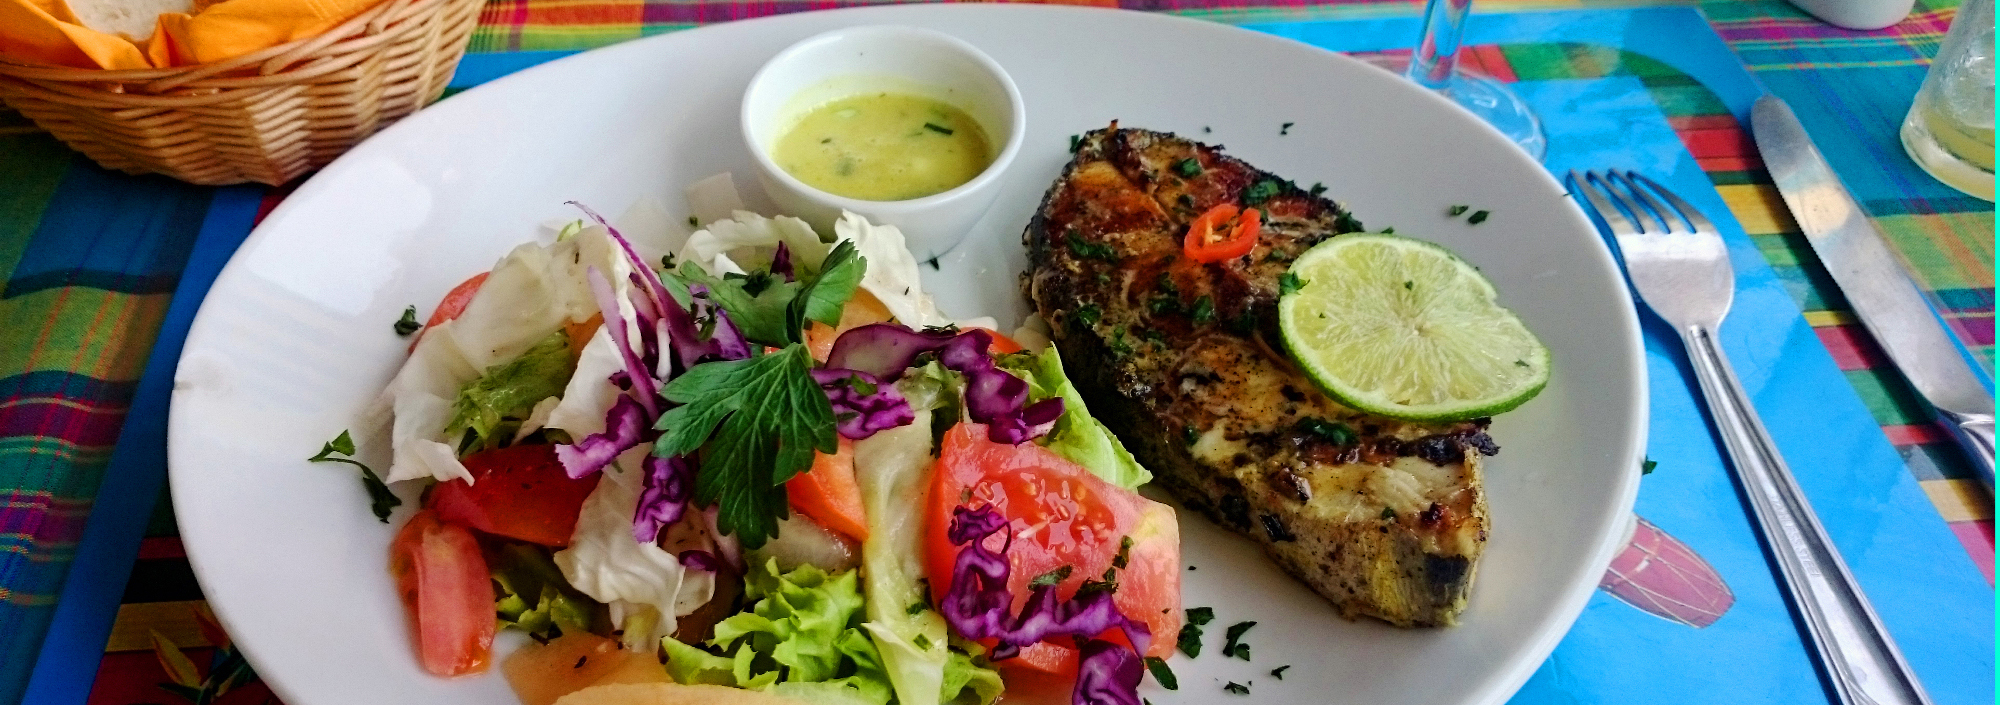 Teller mit buntem karibischem Gericht mit Salat und Fisch